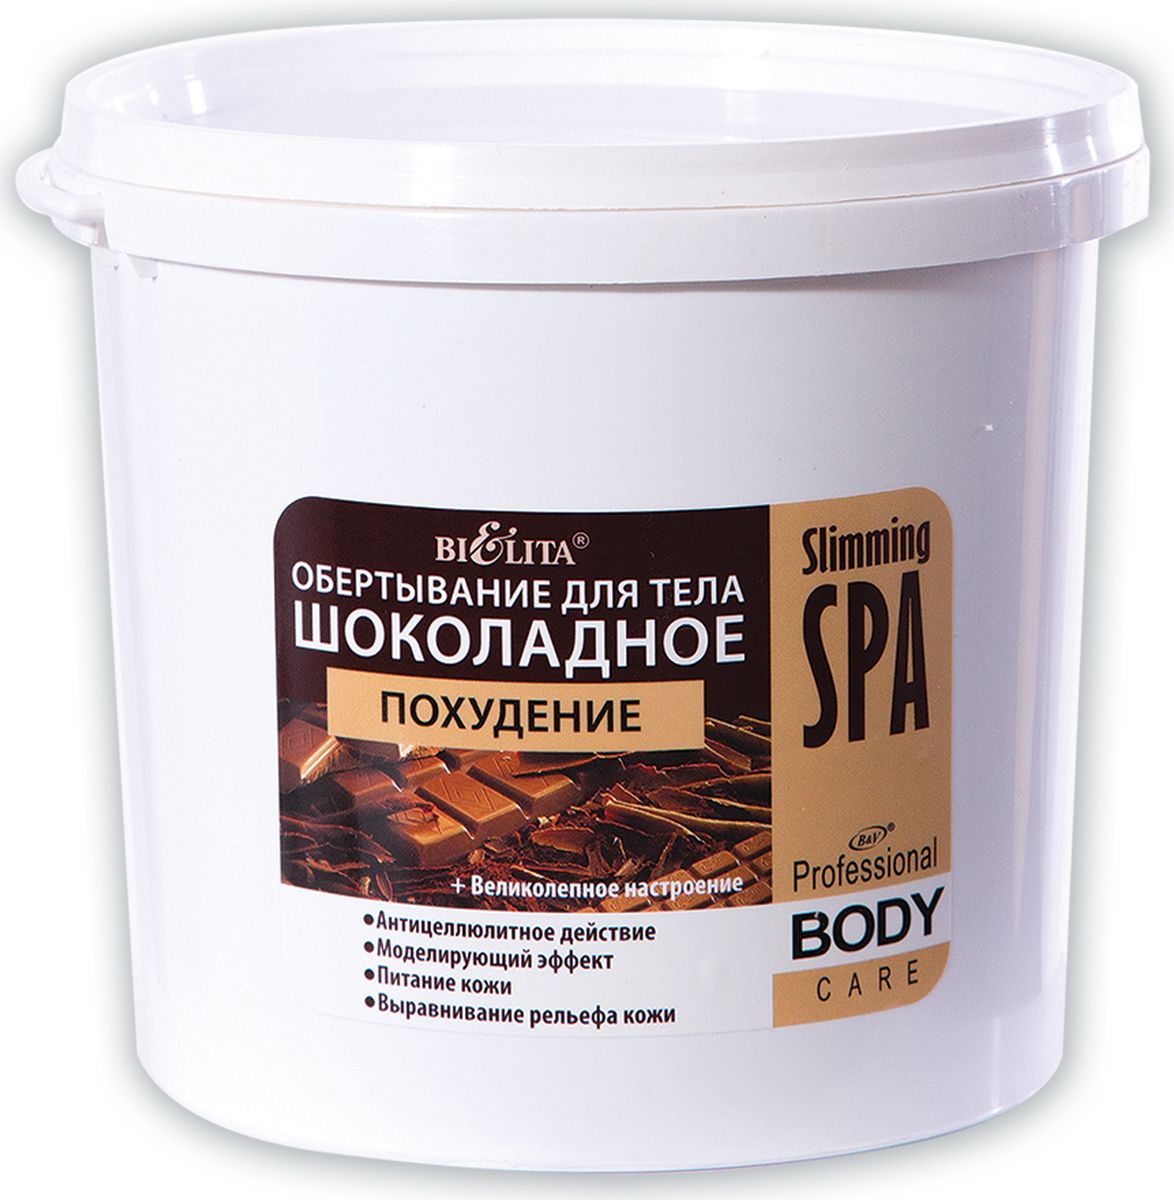 купить Белита Обертывание для тела шоколадное похудение Slimming Spa, 1 кг - заказ и доставка в Москве и Санкт-Петербурге